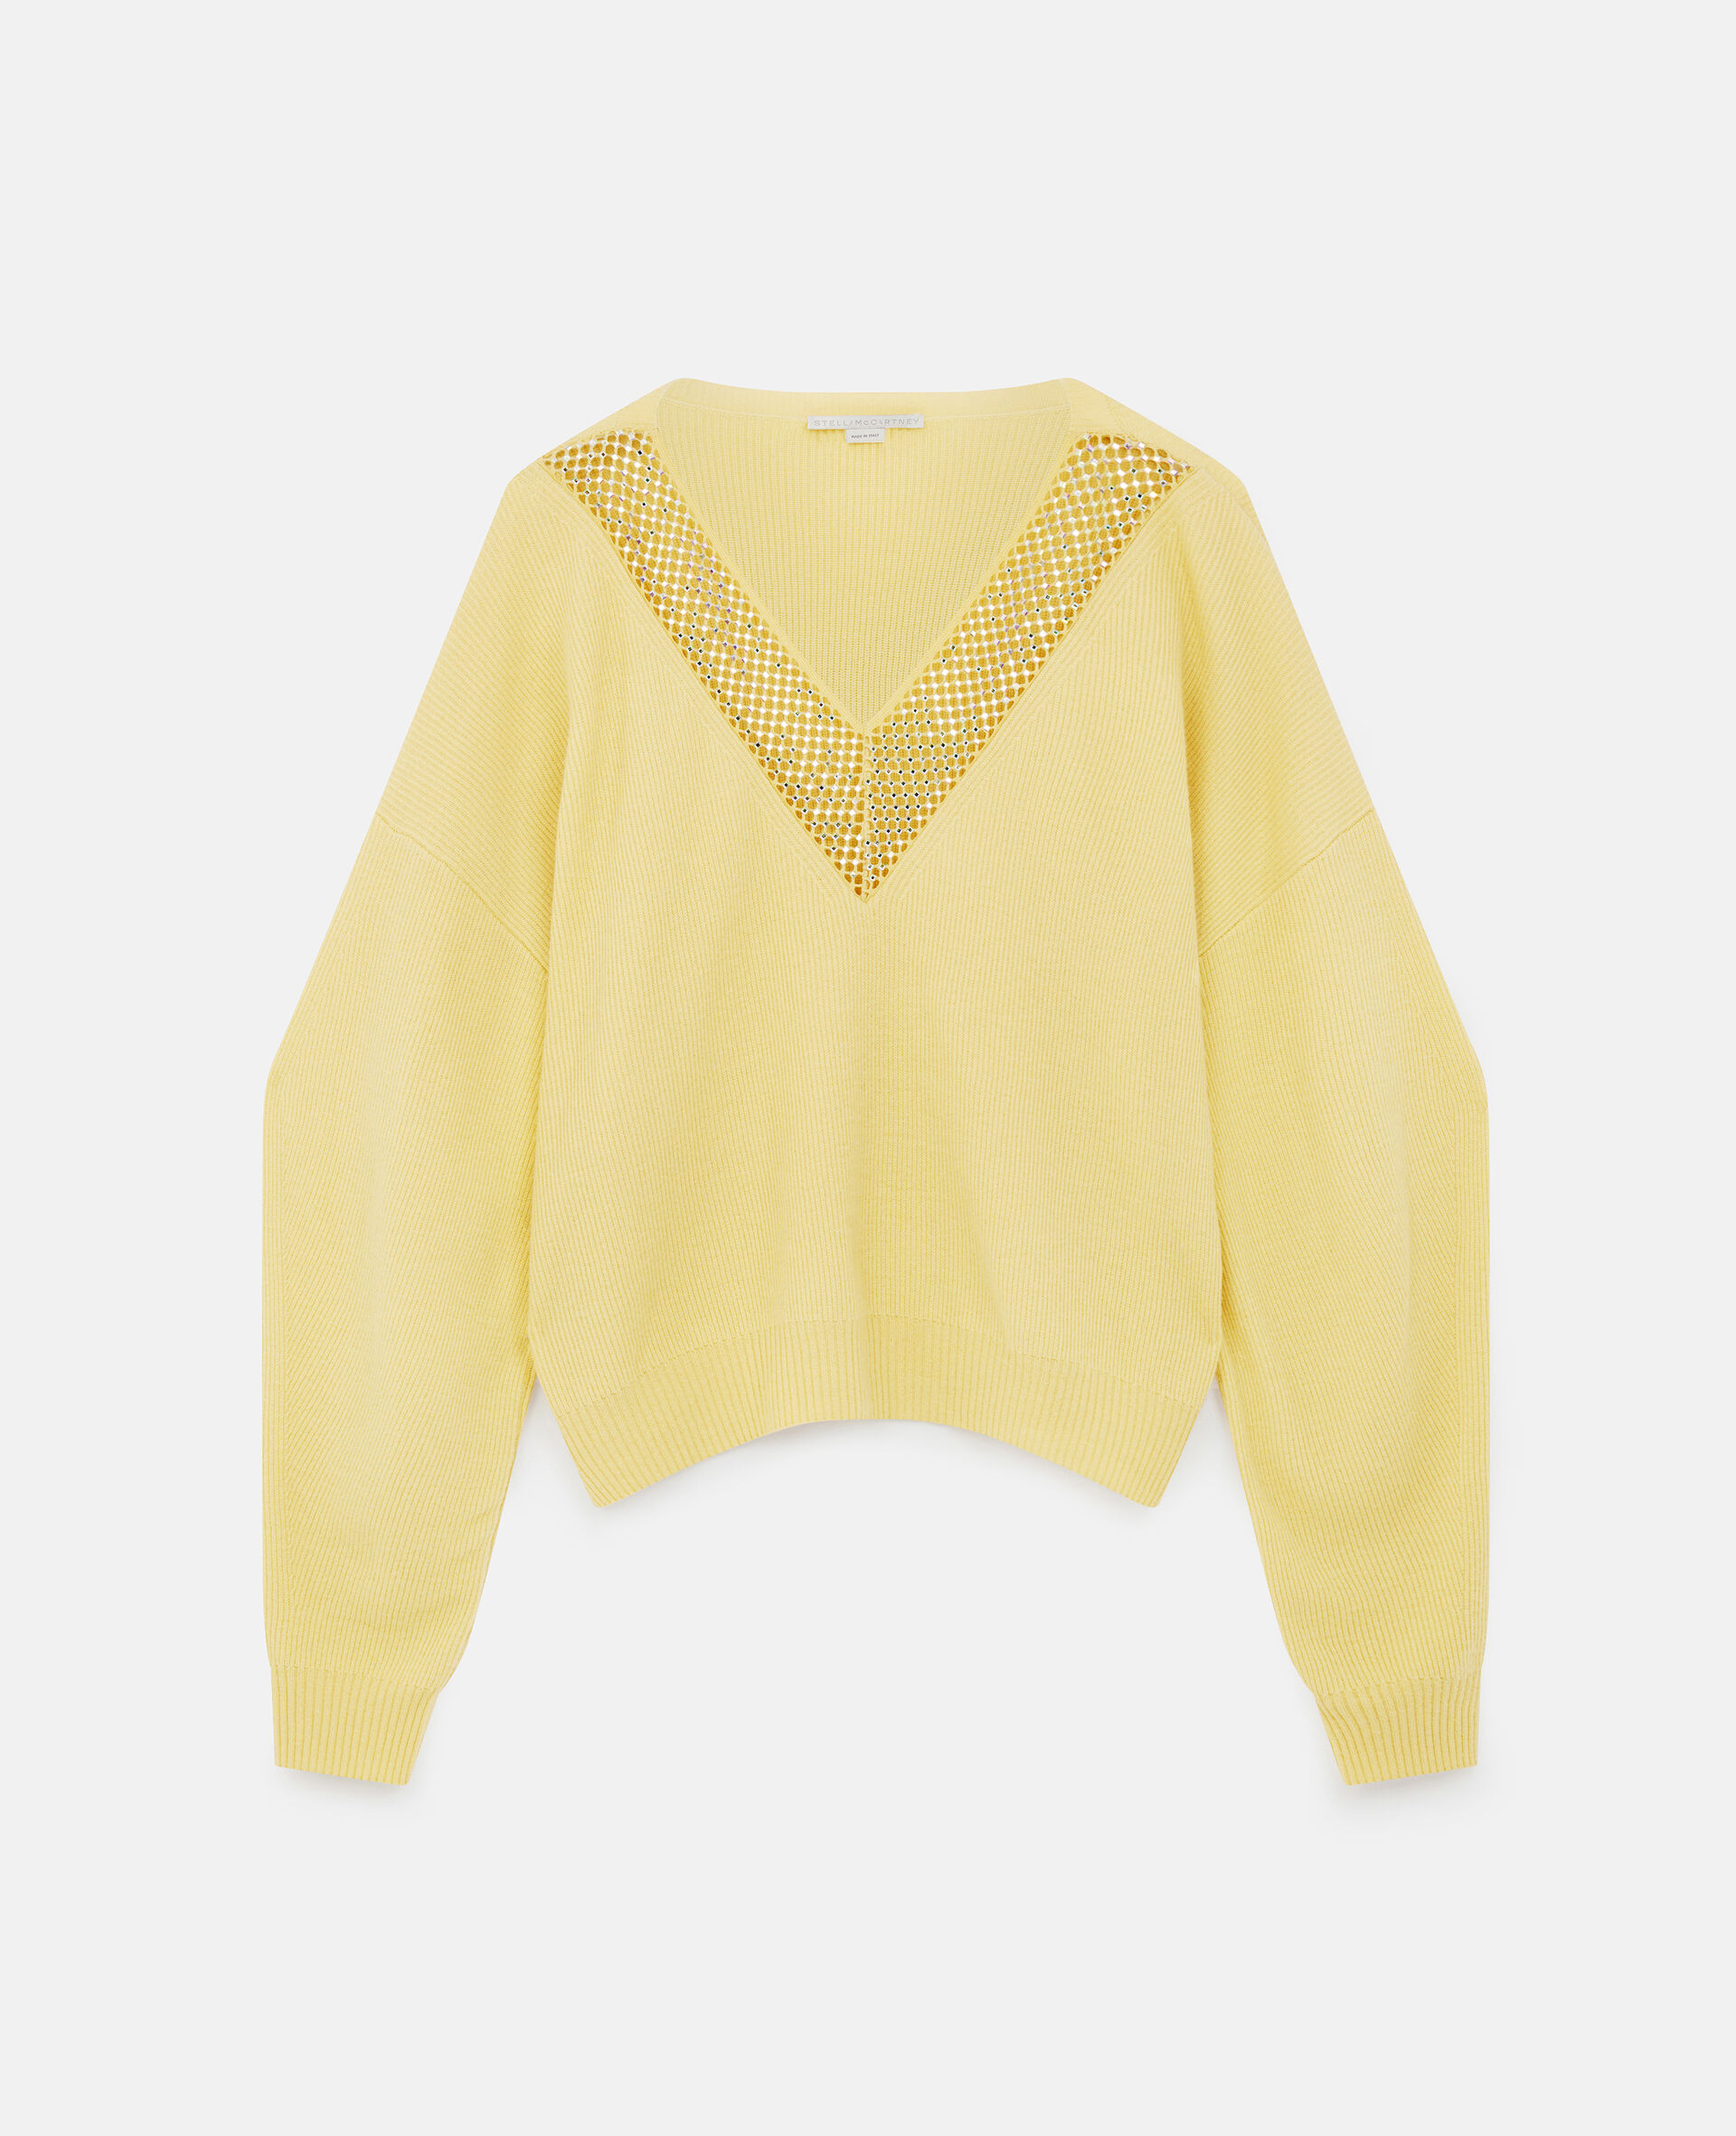 Diamond Embellished Knit Sweater-Yellow-large